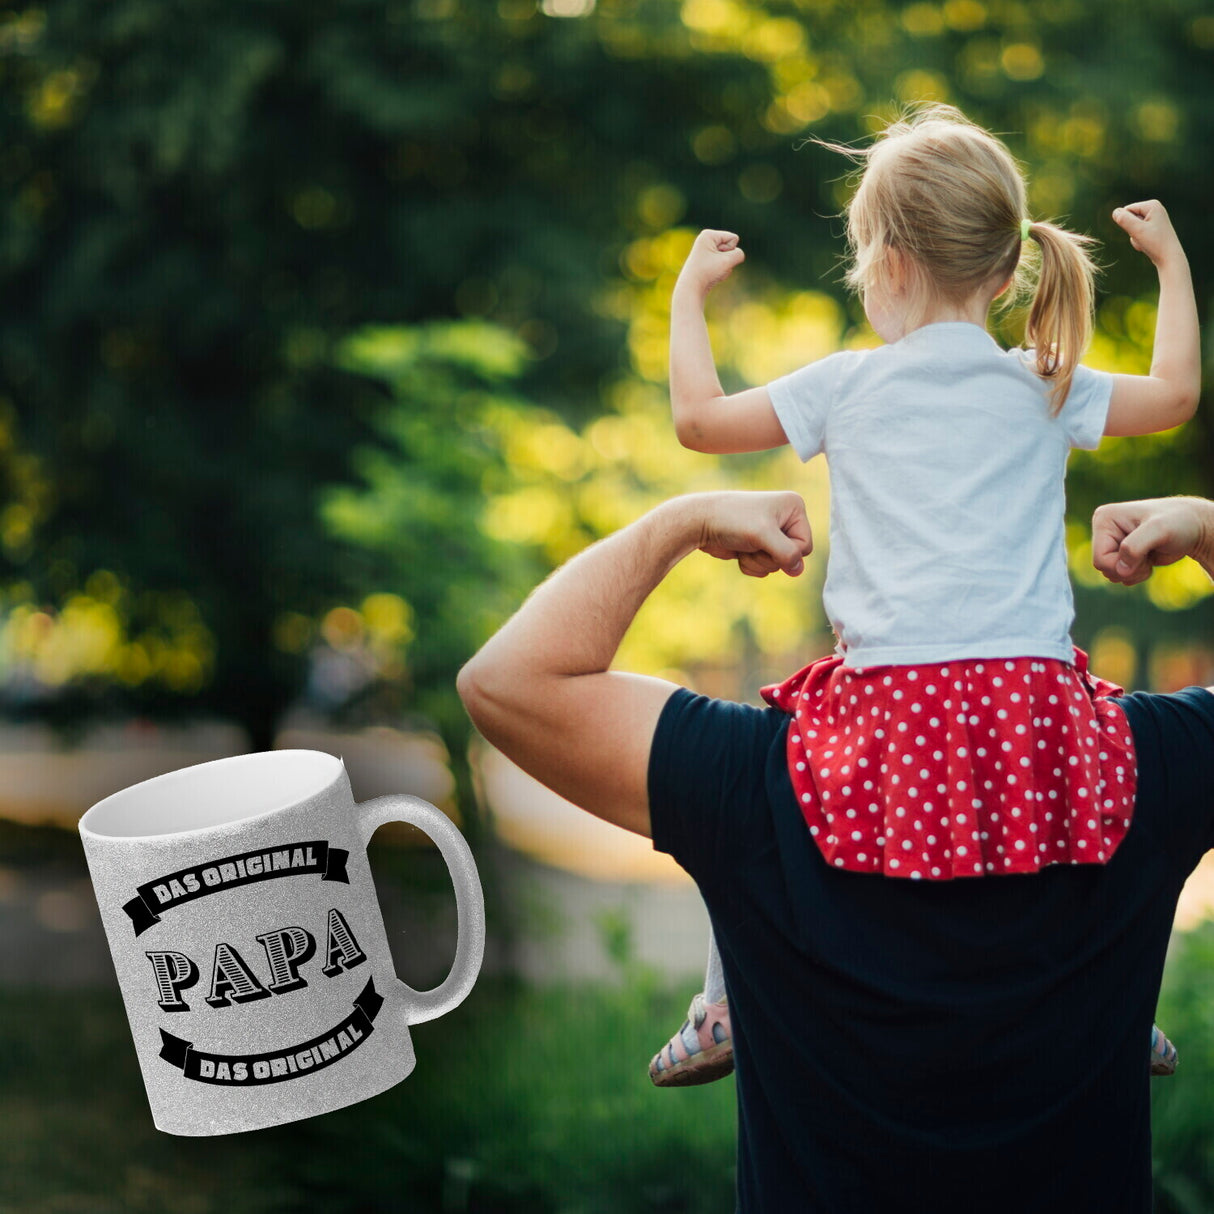 Papa Kaffeebecher mit Spruch Papa Das Original